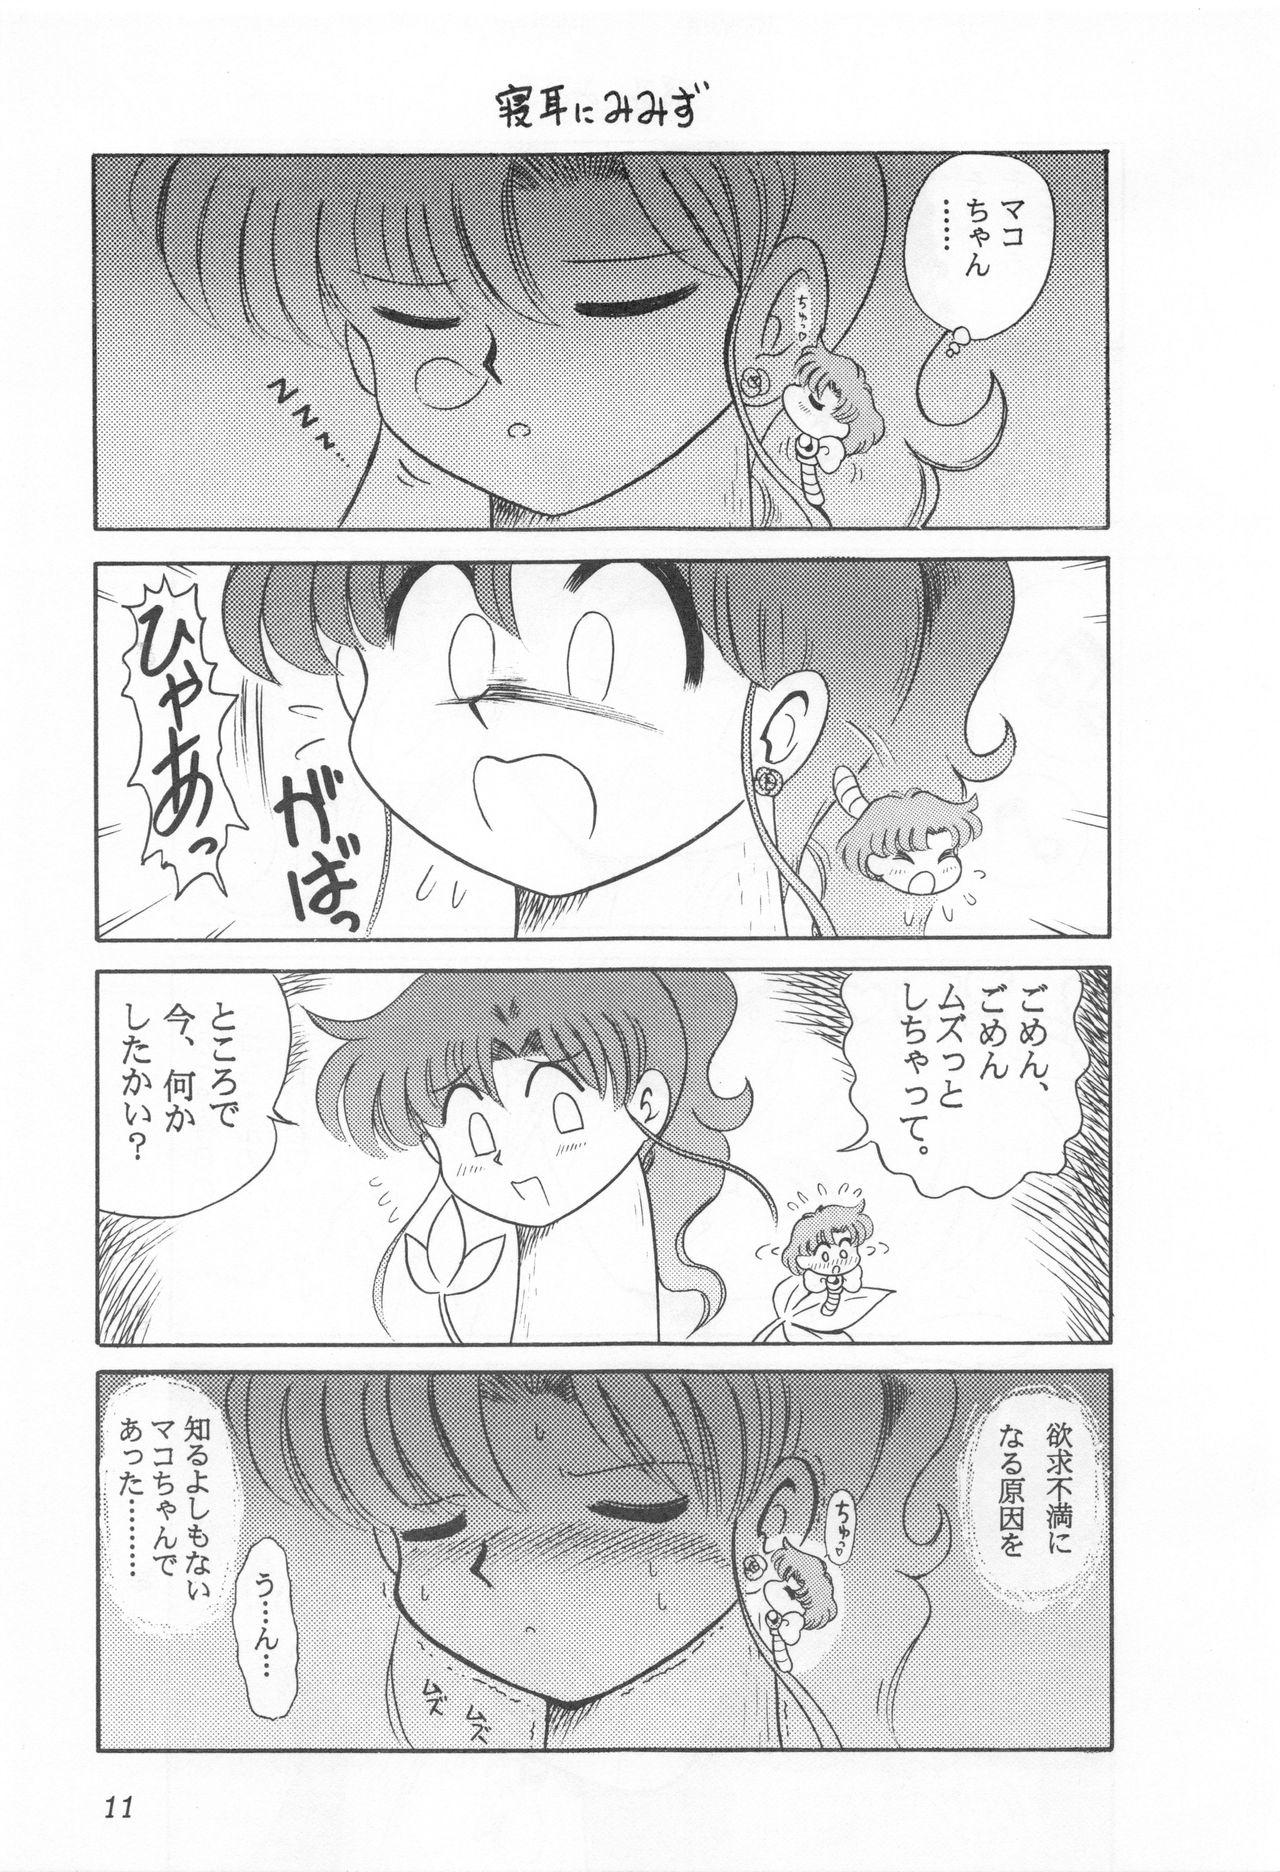 Playing Mimizu no Ami-chan Vol. 2 - Sailor moon Str8 - Page 10